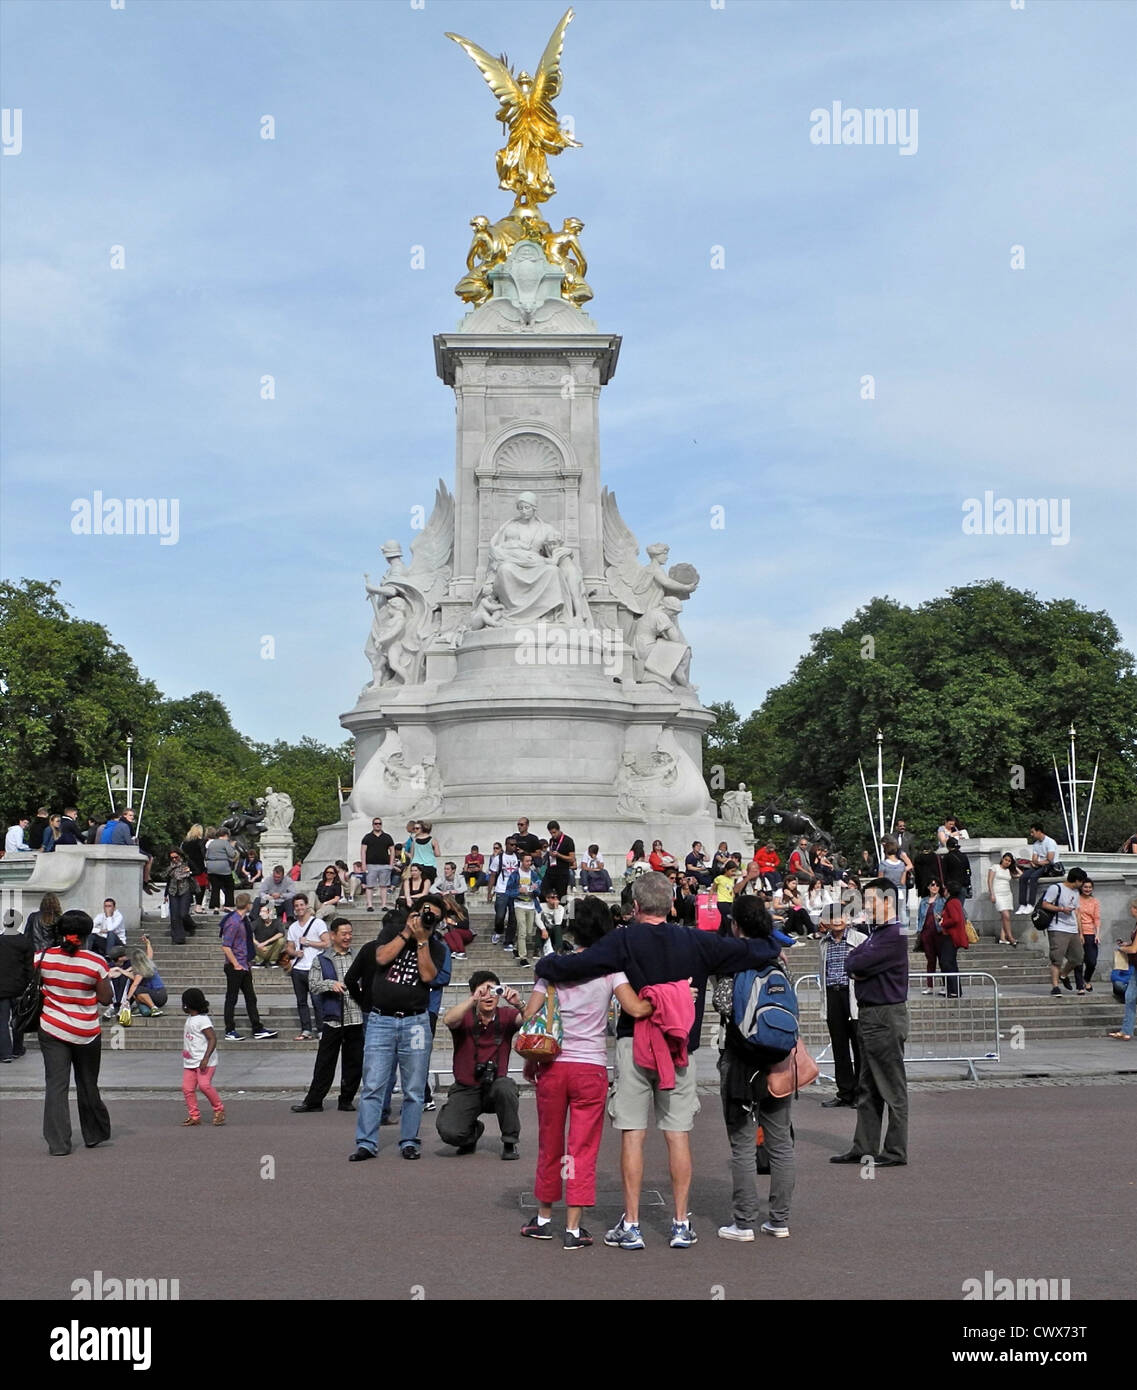 Memoriale della Victoria costruito nel 1913 in onore della regina Victoria si trova di fronte a Buckingham Palace alla fine del Mall London Foto Stock